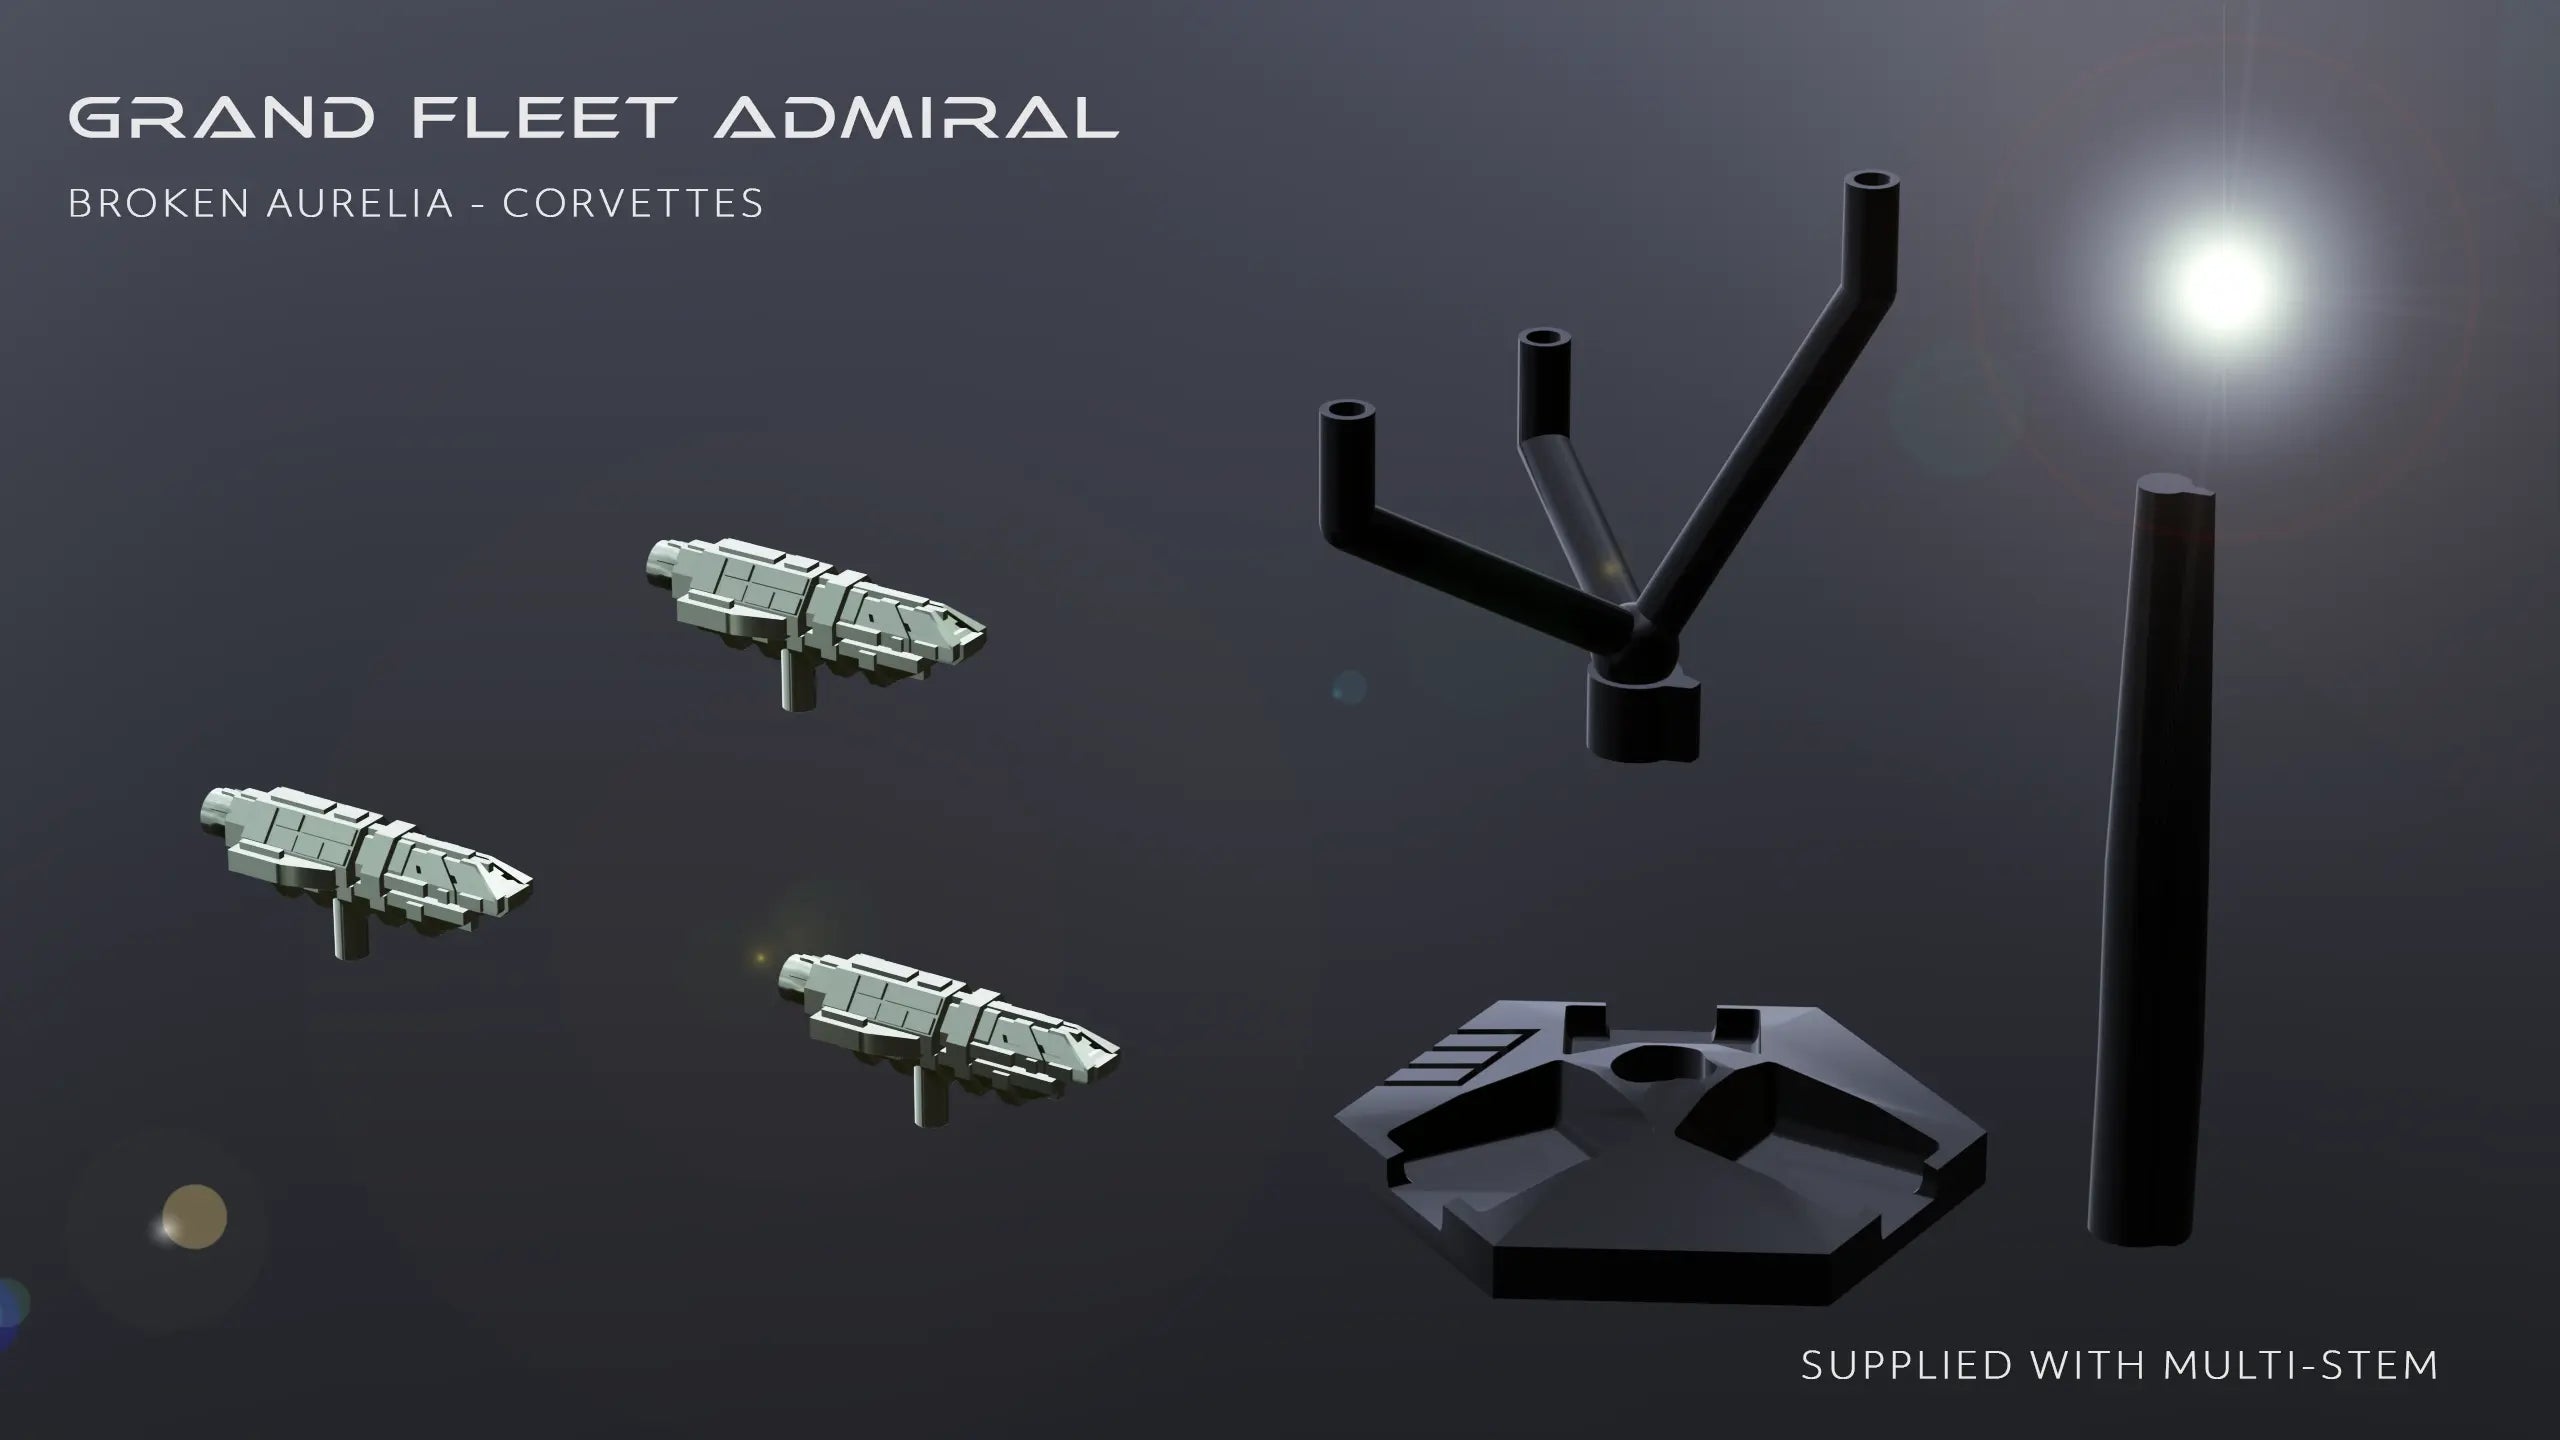 Broken Aurelia - Corvette (3) Grand Fleet Admiral